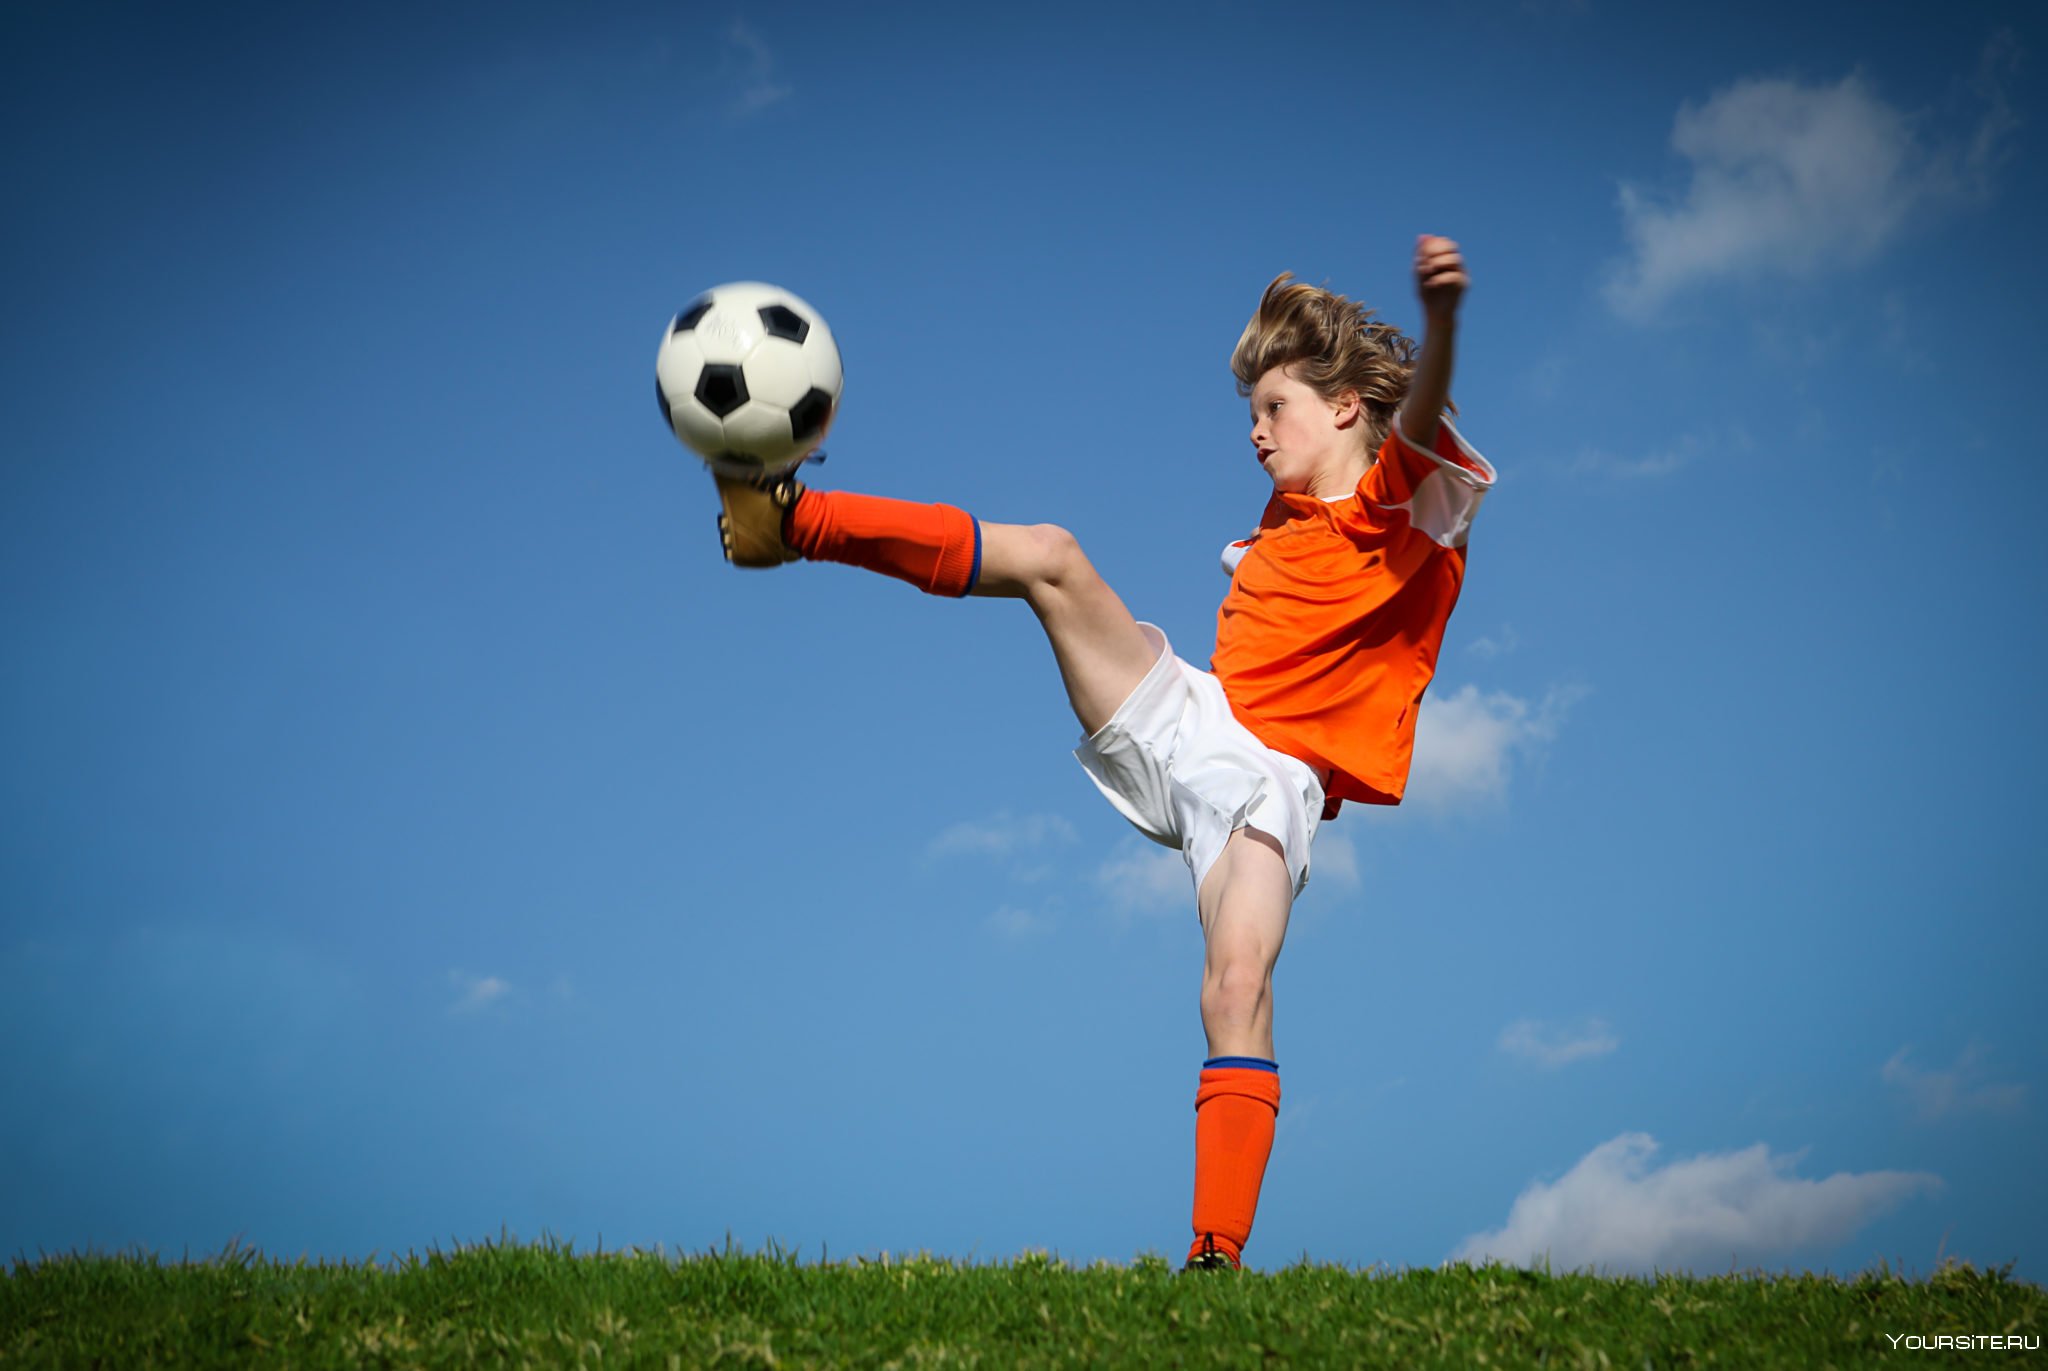 Do you enjoy playing sports. Спорт дети. Мальчик с футбольным мячом. Ребенок с футбольным мячом. Подросток с футбольным мячом.